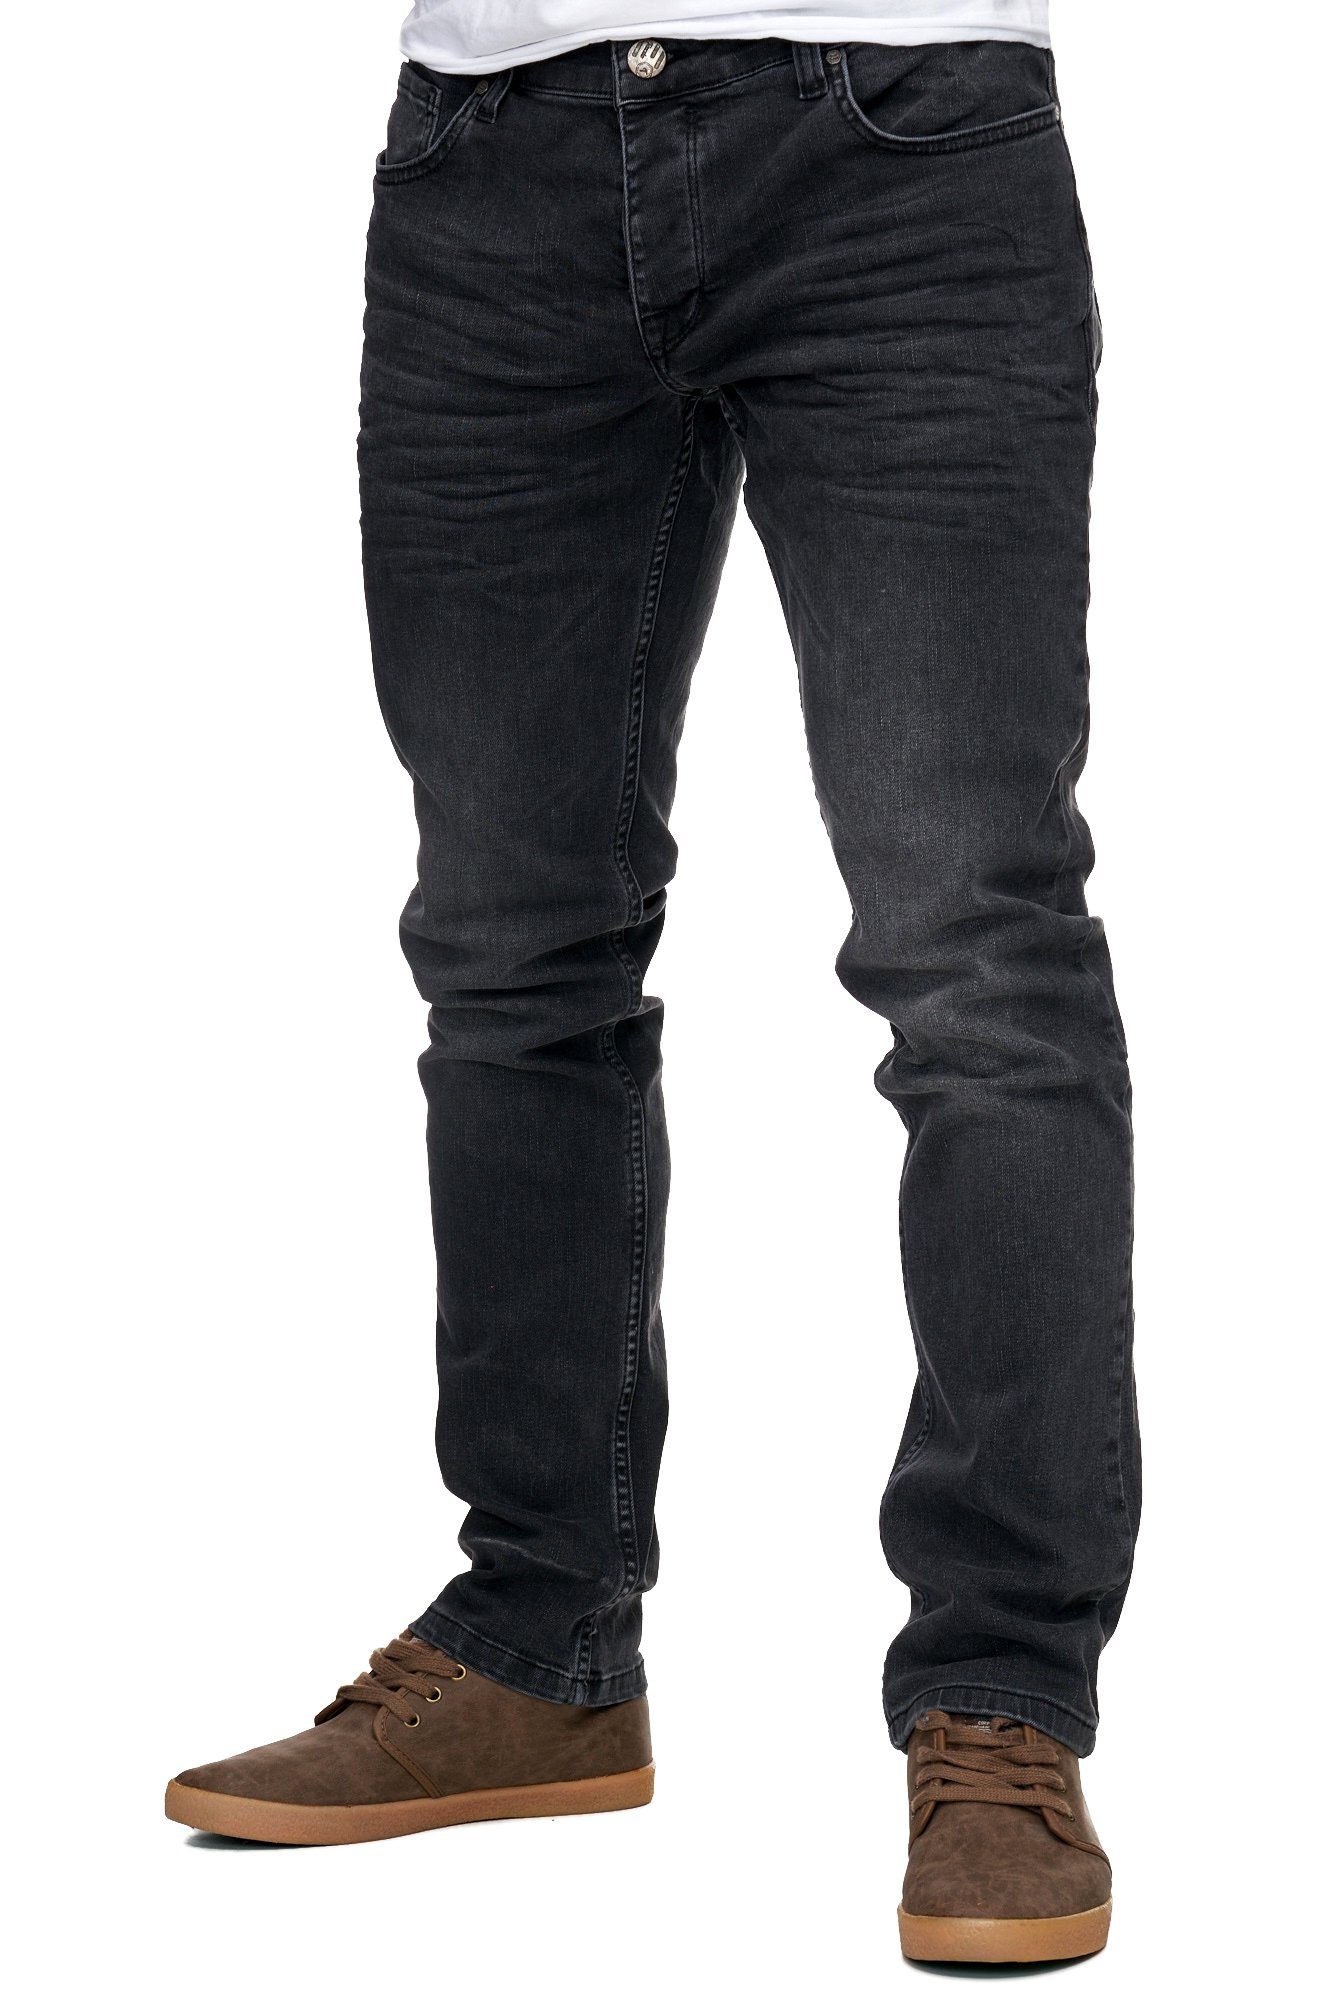 Jeans-Hose Reslad Stretch-Denim Stretch Style Fit Jeans-Herren Fit Reslad Jeans-Hose Slim Stretch-Jeans schwarz Basic Slim